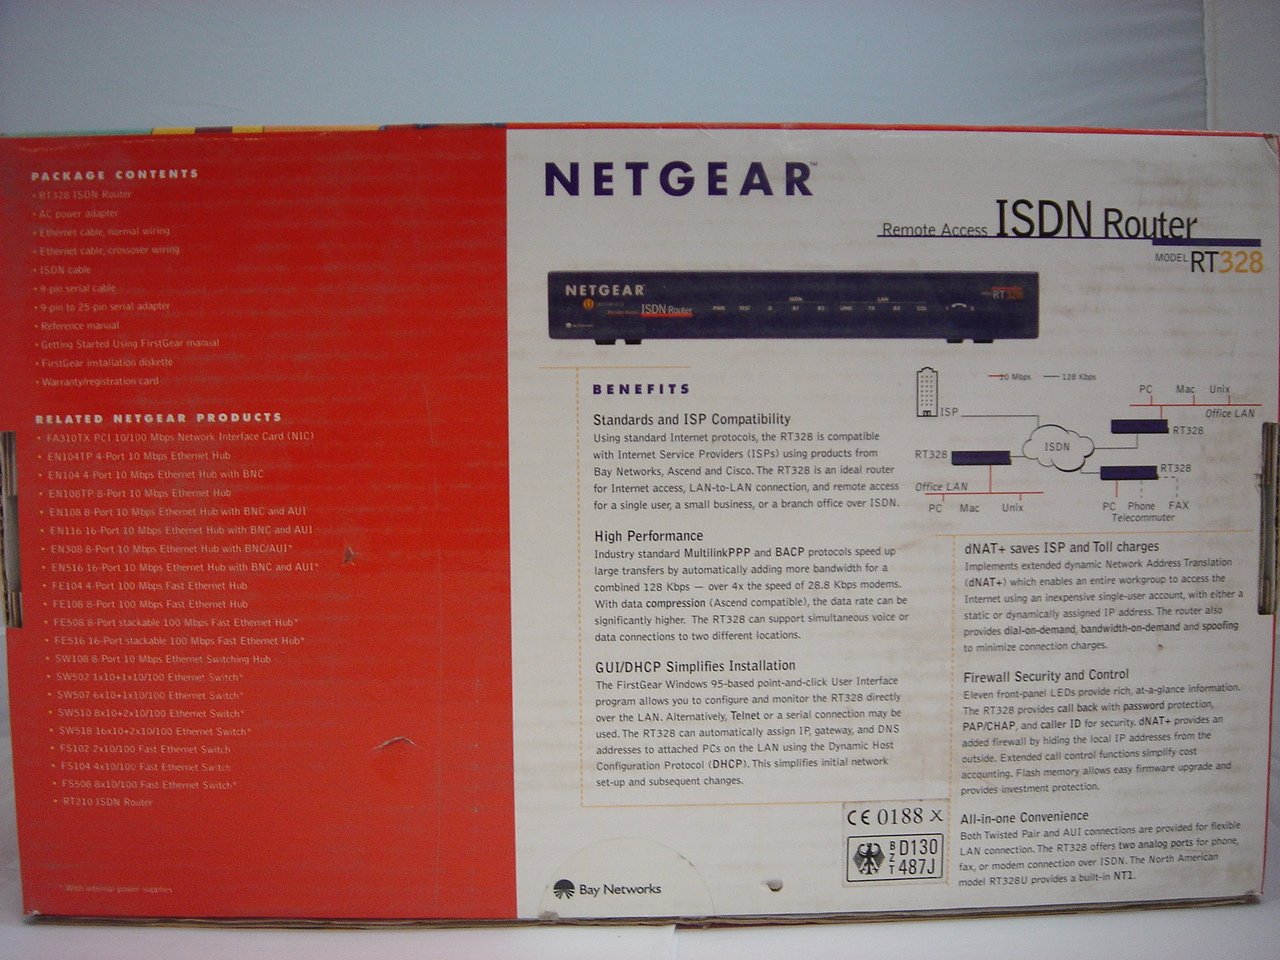 MC5050_RT328_Netgear RT328 ISDN Router - Image8